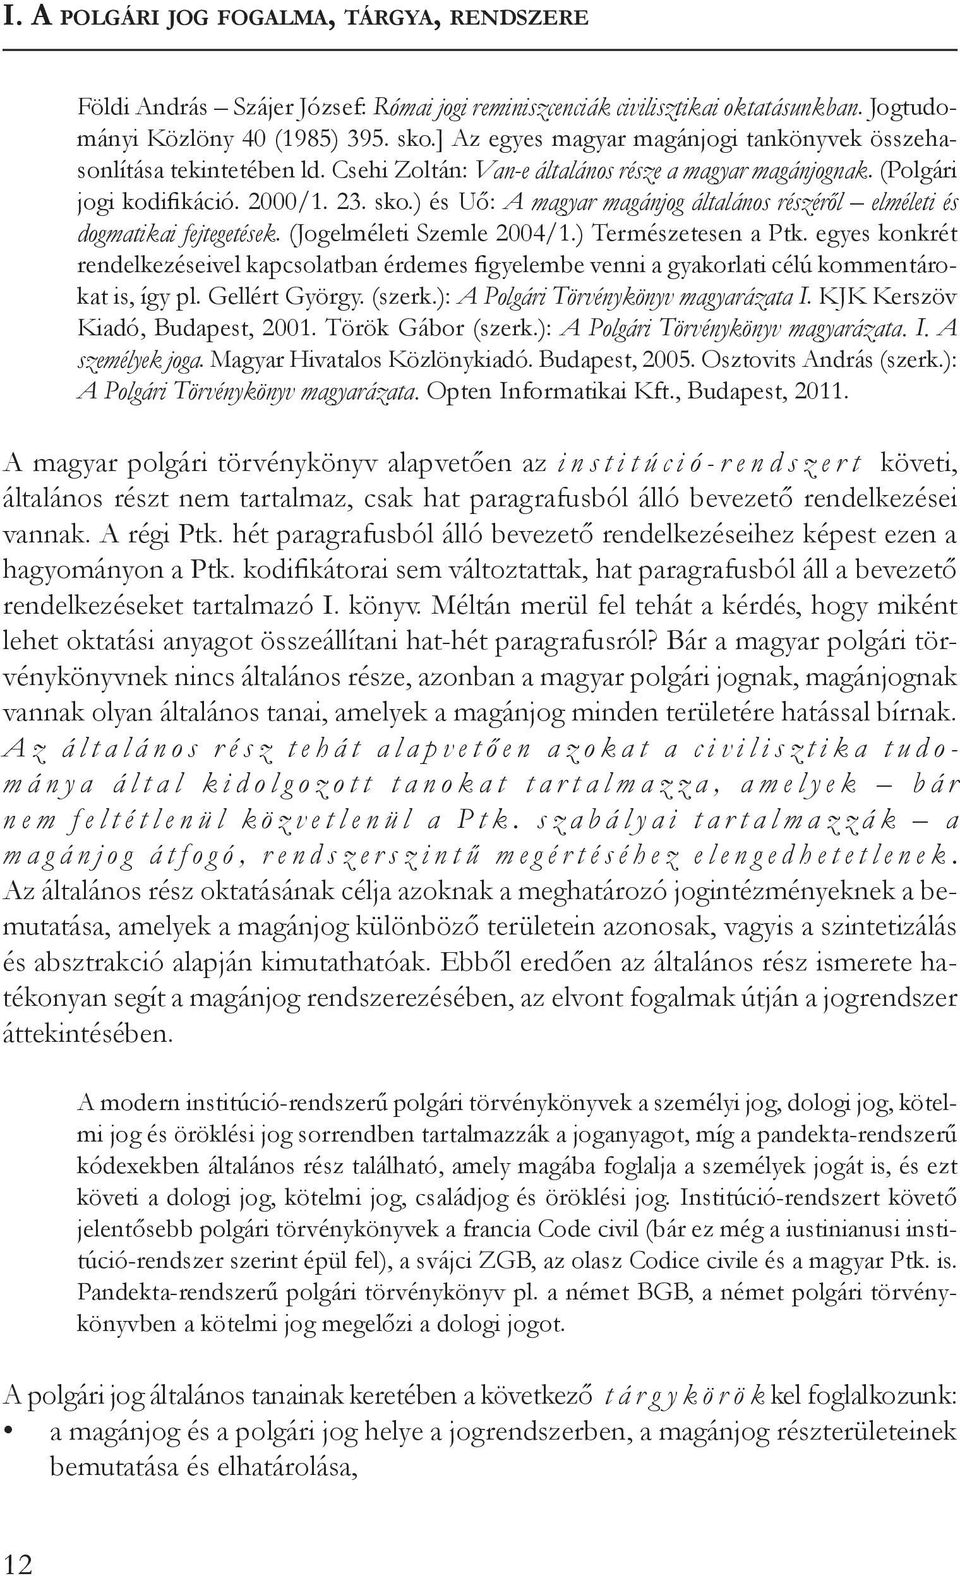 ) és Uő: A magyar magánjog általános részéről elméleti és dogmatikai fejtegetések. (Jogelméleti Szemle 2004/1.) Természetesen a Ptk.